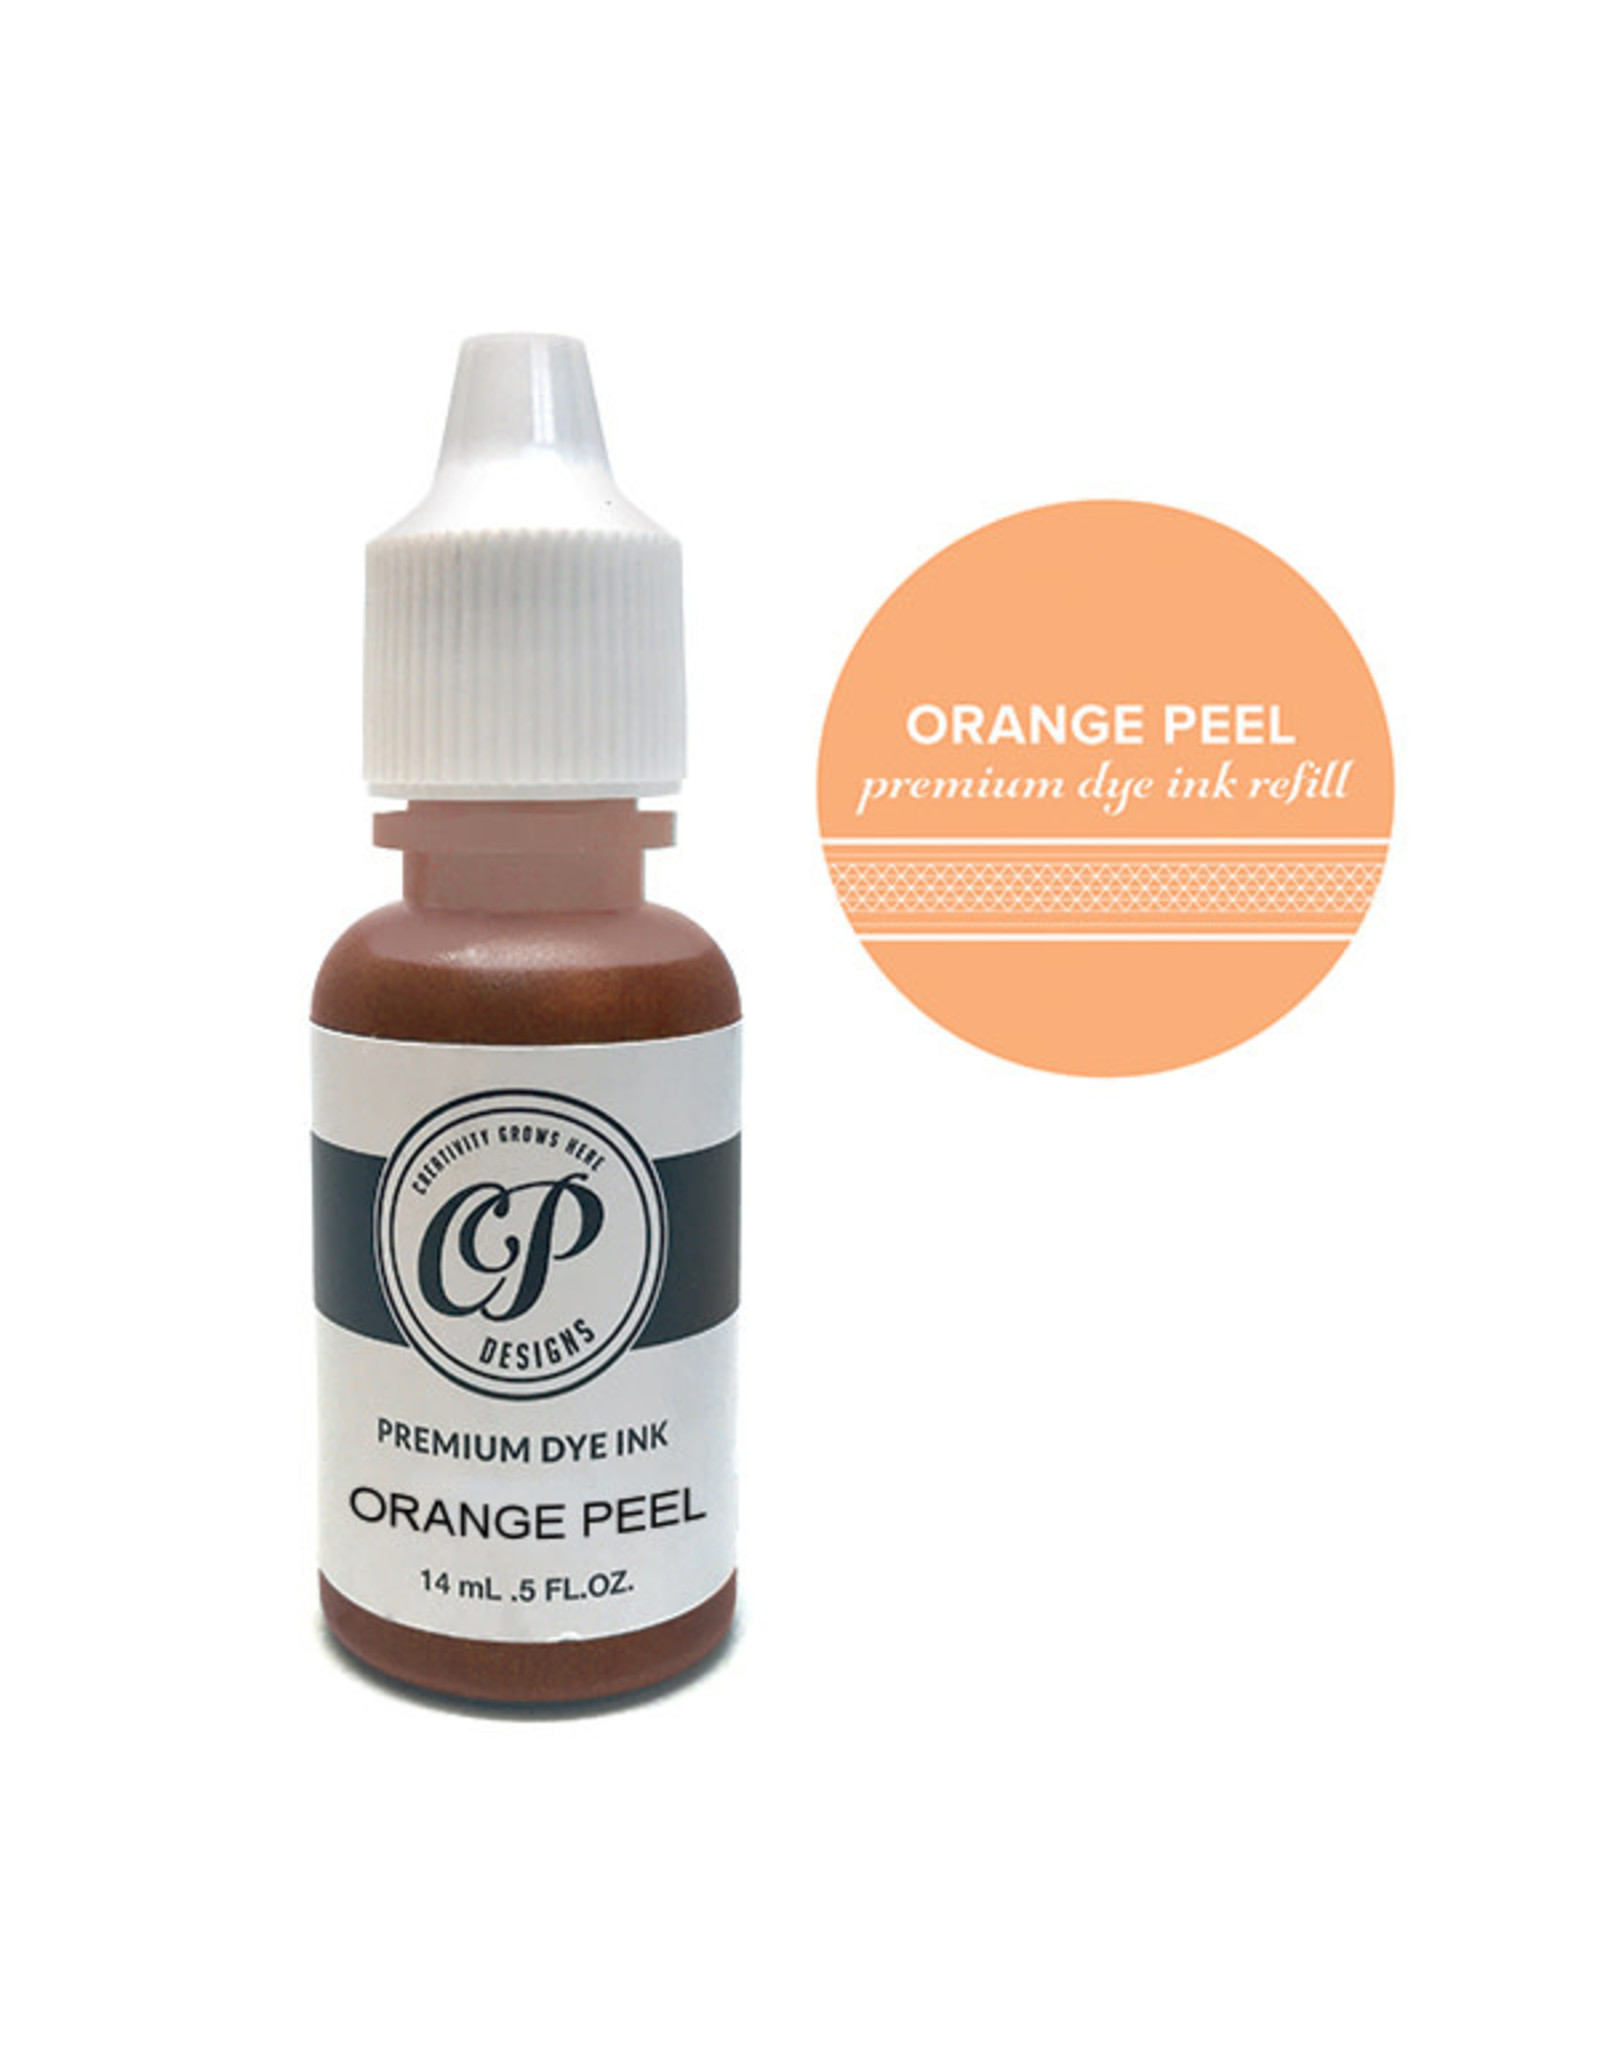 Catherine Pooler Designs Orange Peel Ink Refill